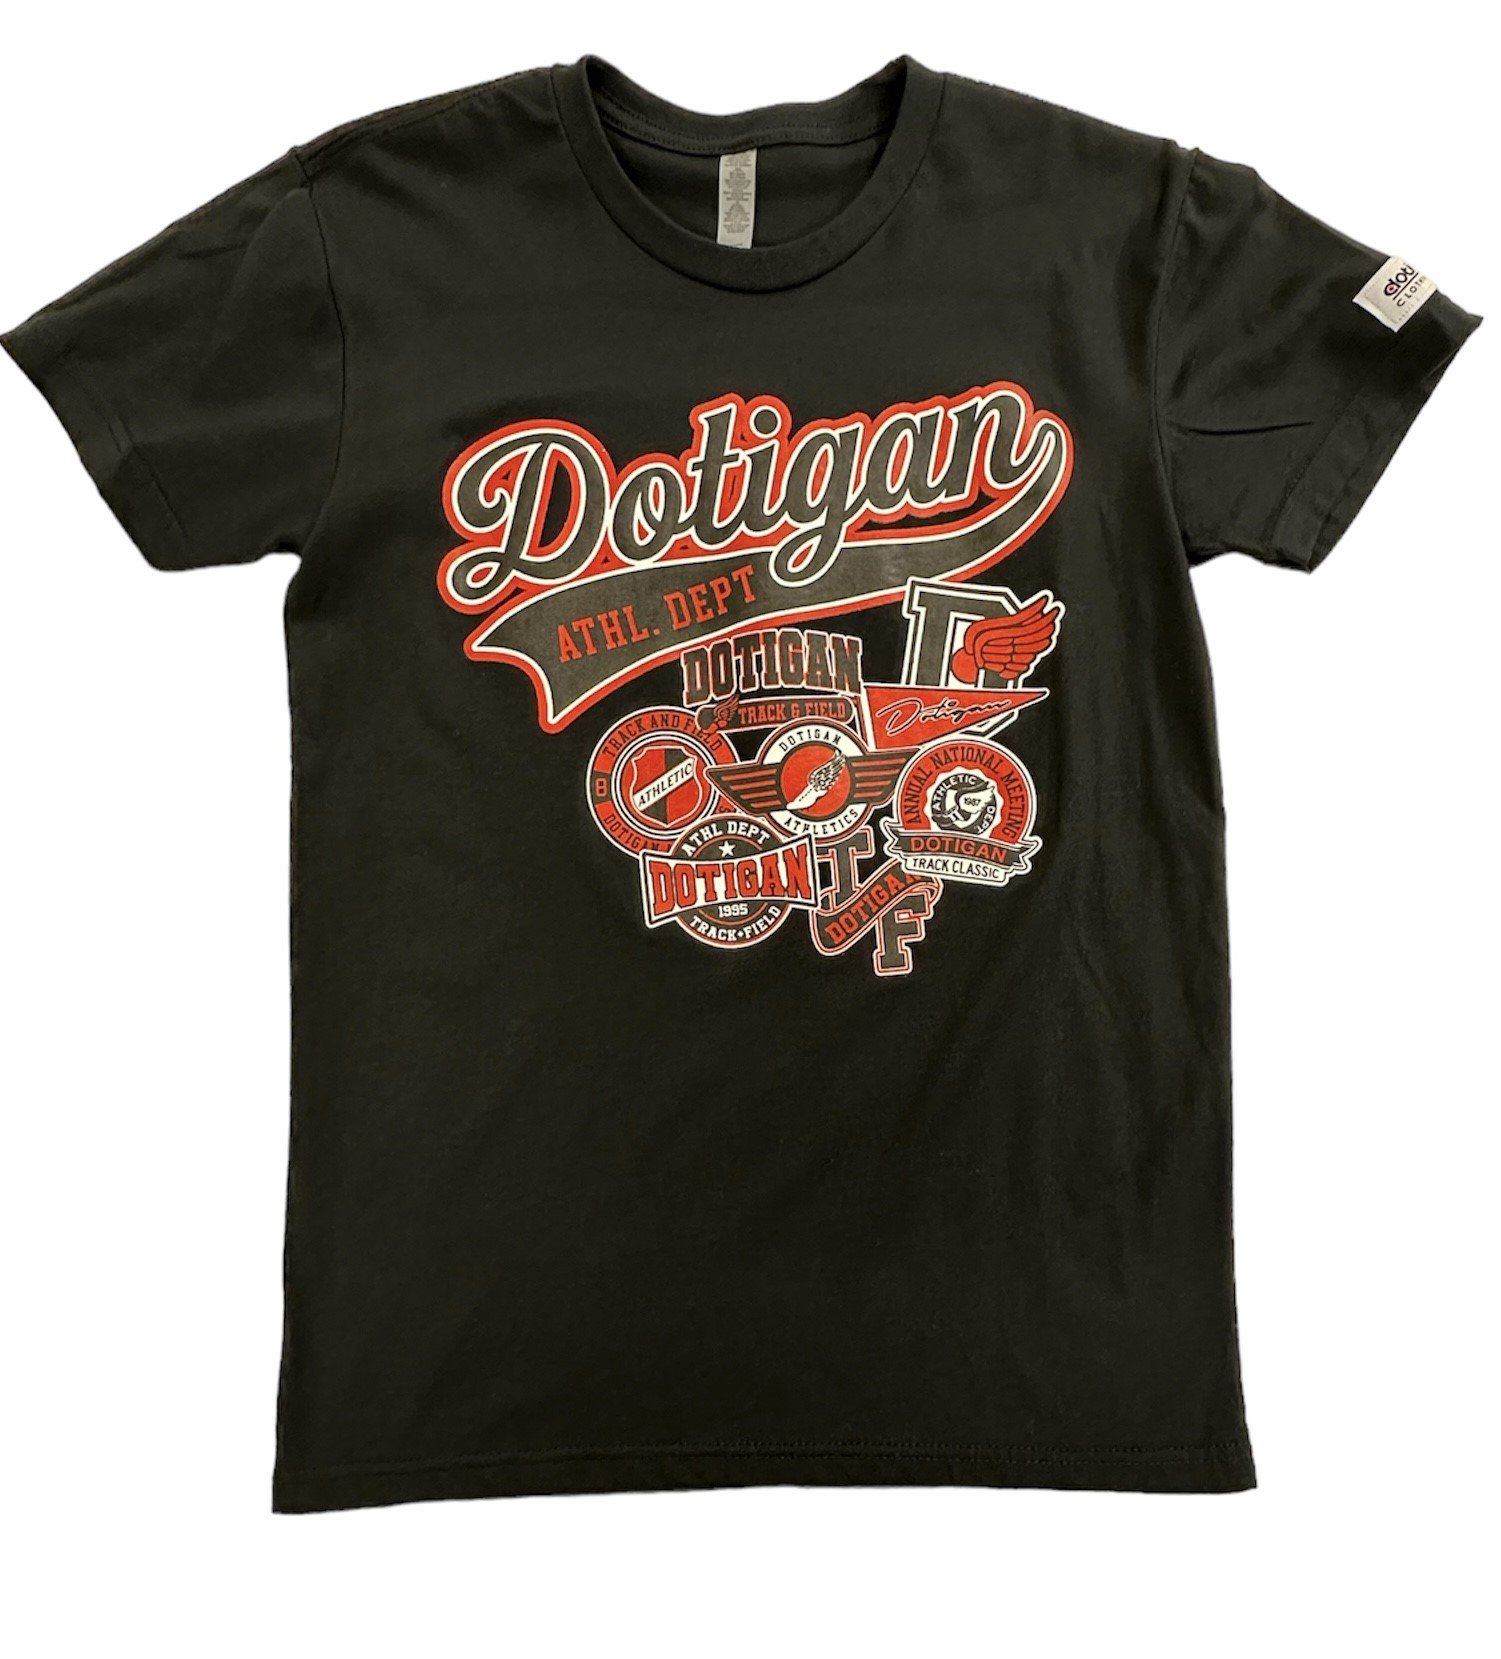 Dotigan Clothing Co.